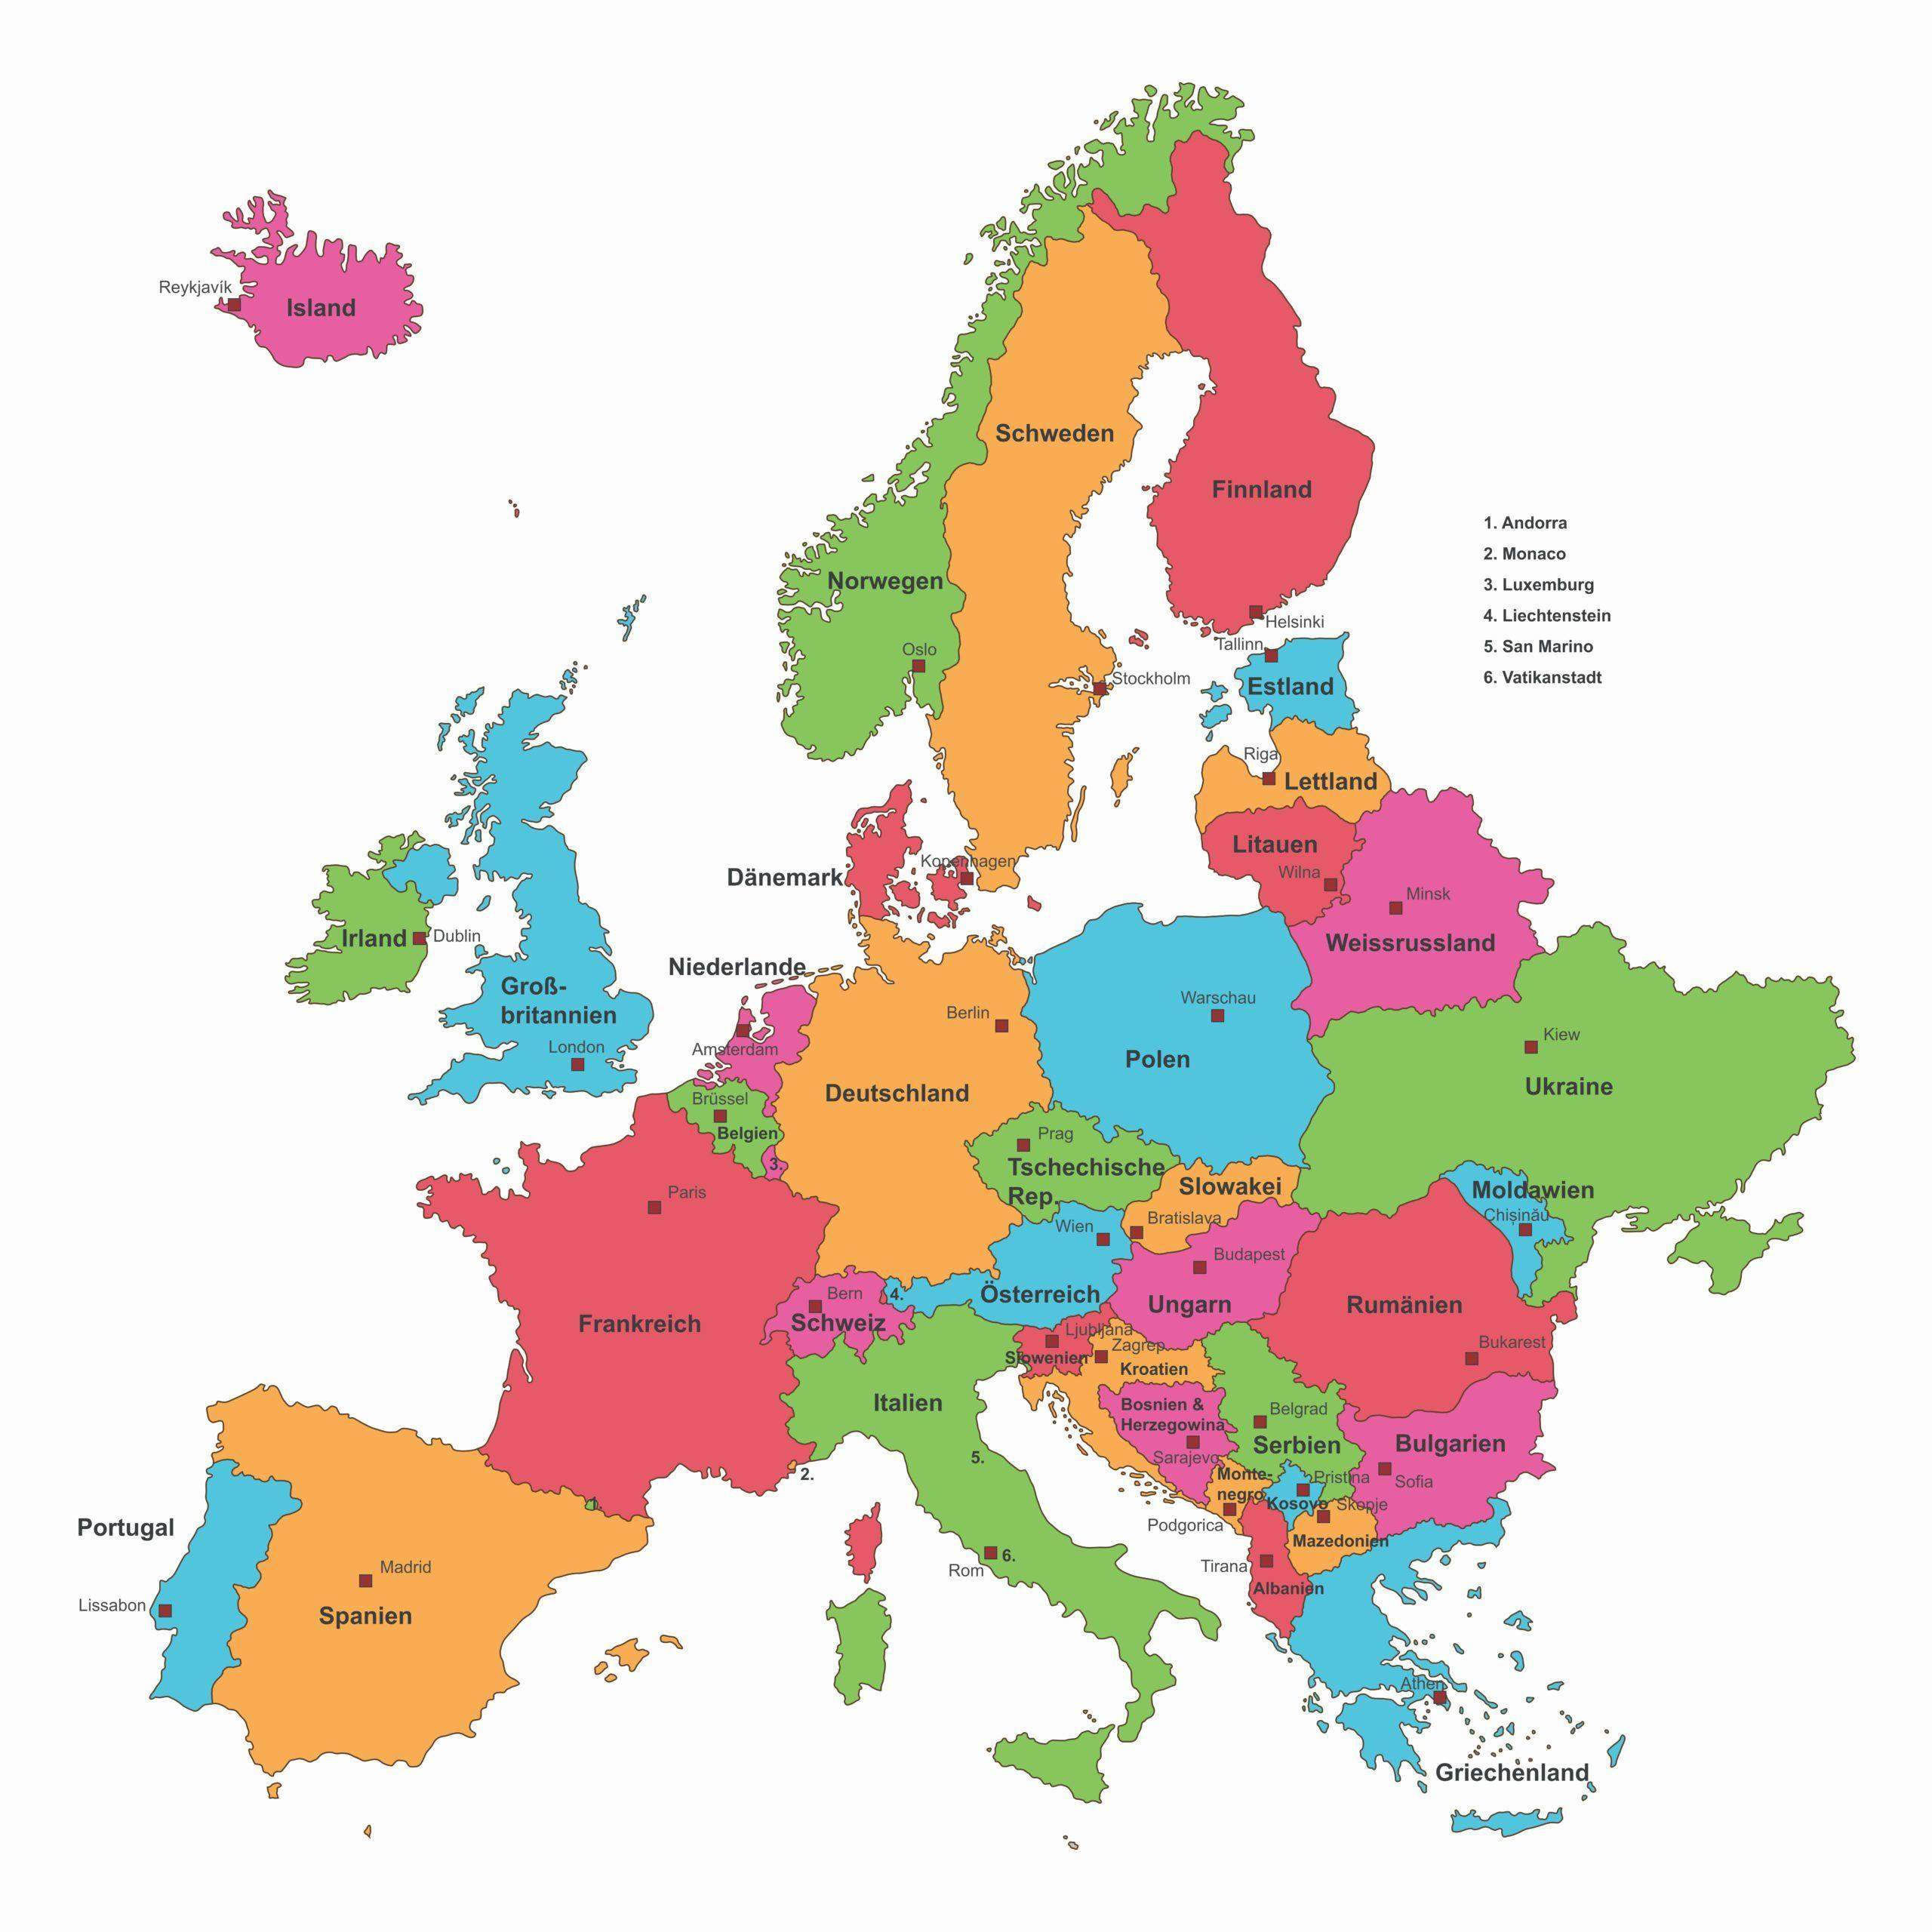 Wer kann mir einen Link von einer Europakarte schicken (Link), wo man